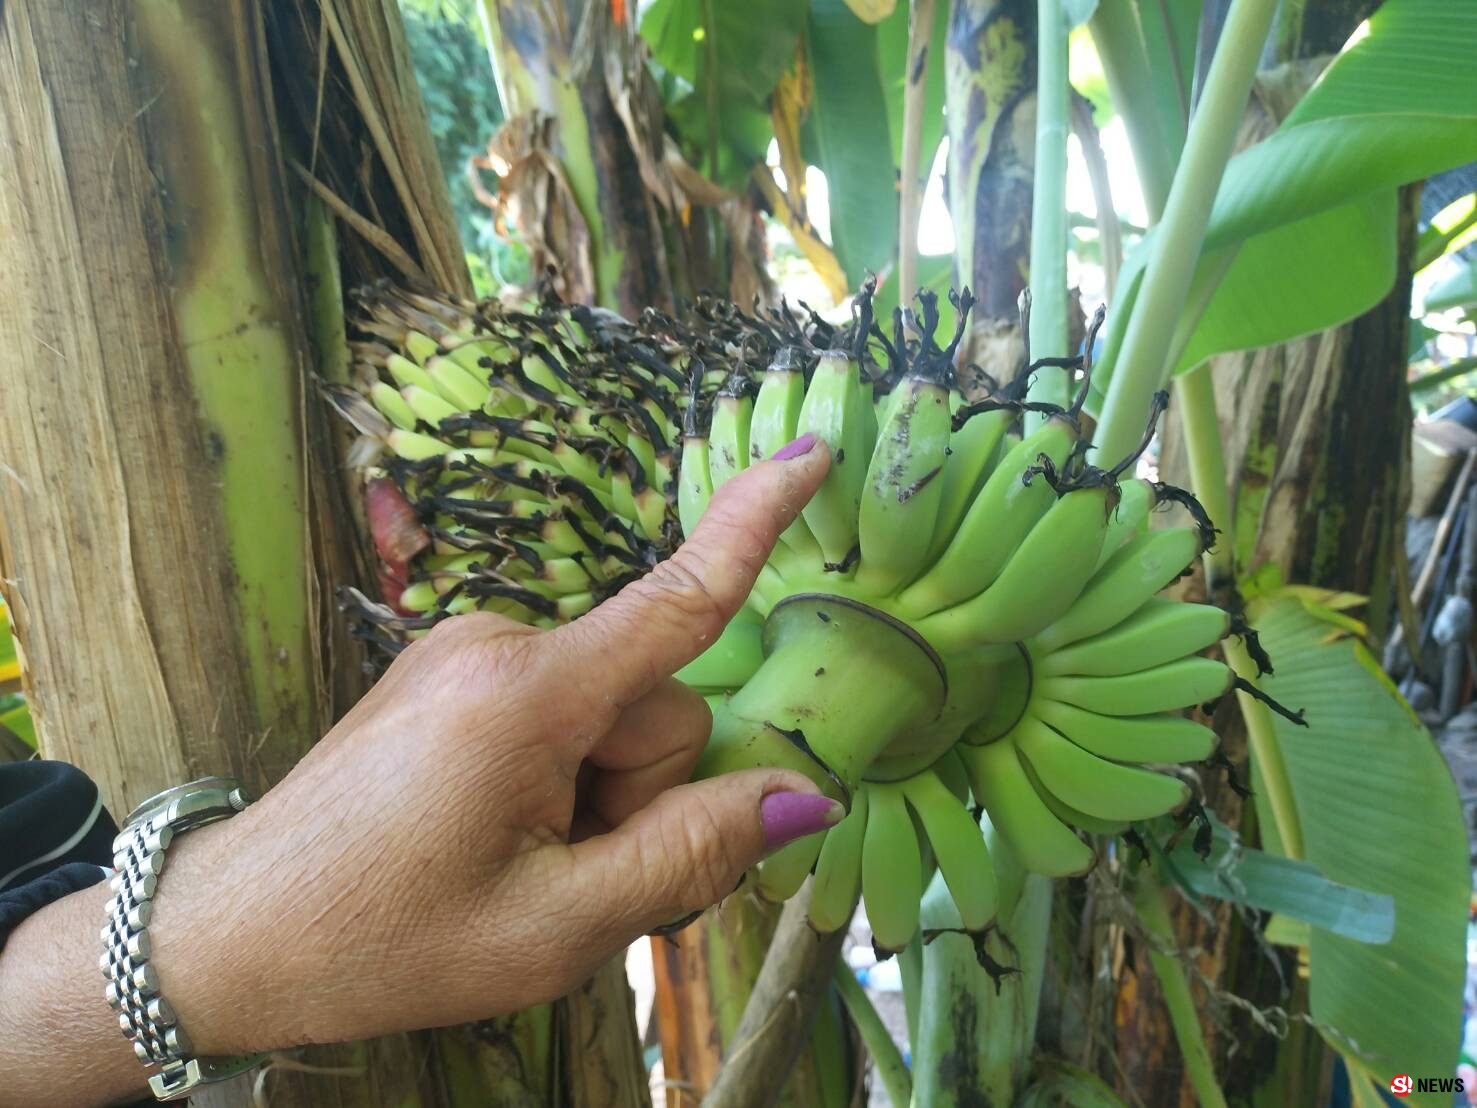 โคราช-ฮือฮา...ต้นกล้วยประหลาดออกปลีกลางลำต้น ปลายปลีมุดเข้าต้นคืน ชาวบ้านเชื่อมาให้โชคใกล้วันหวยออก